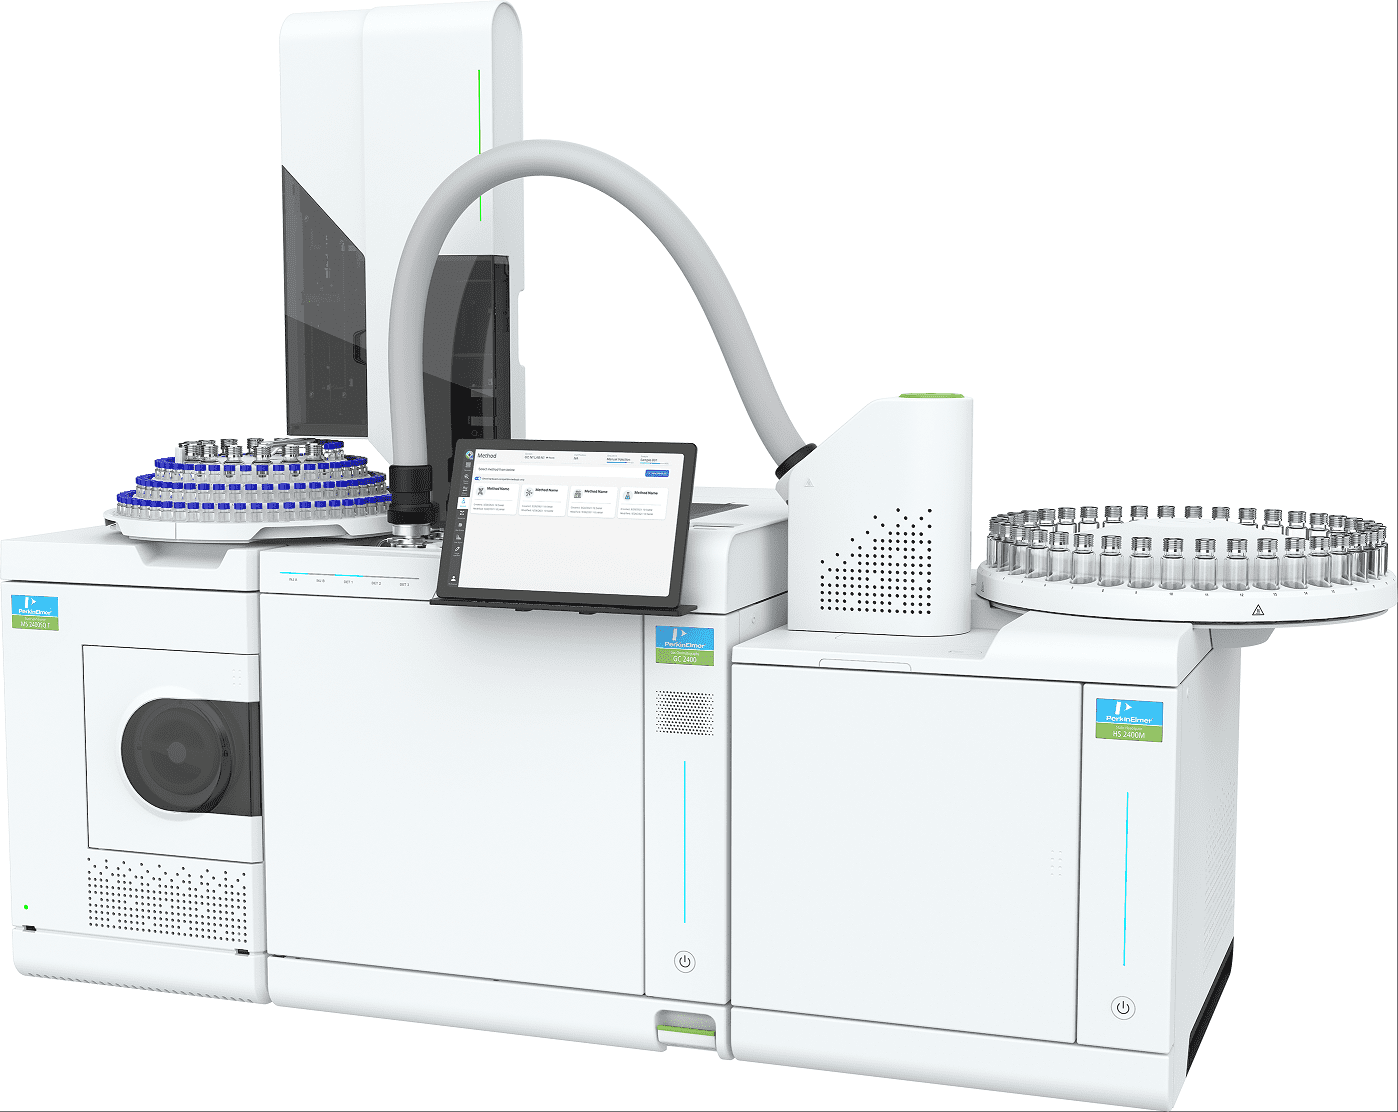 PerkinElmer introducerar nästa generations automatiserade GC 2400-plattform för effektiviserad gaskromatografi